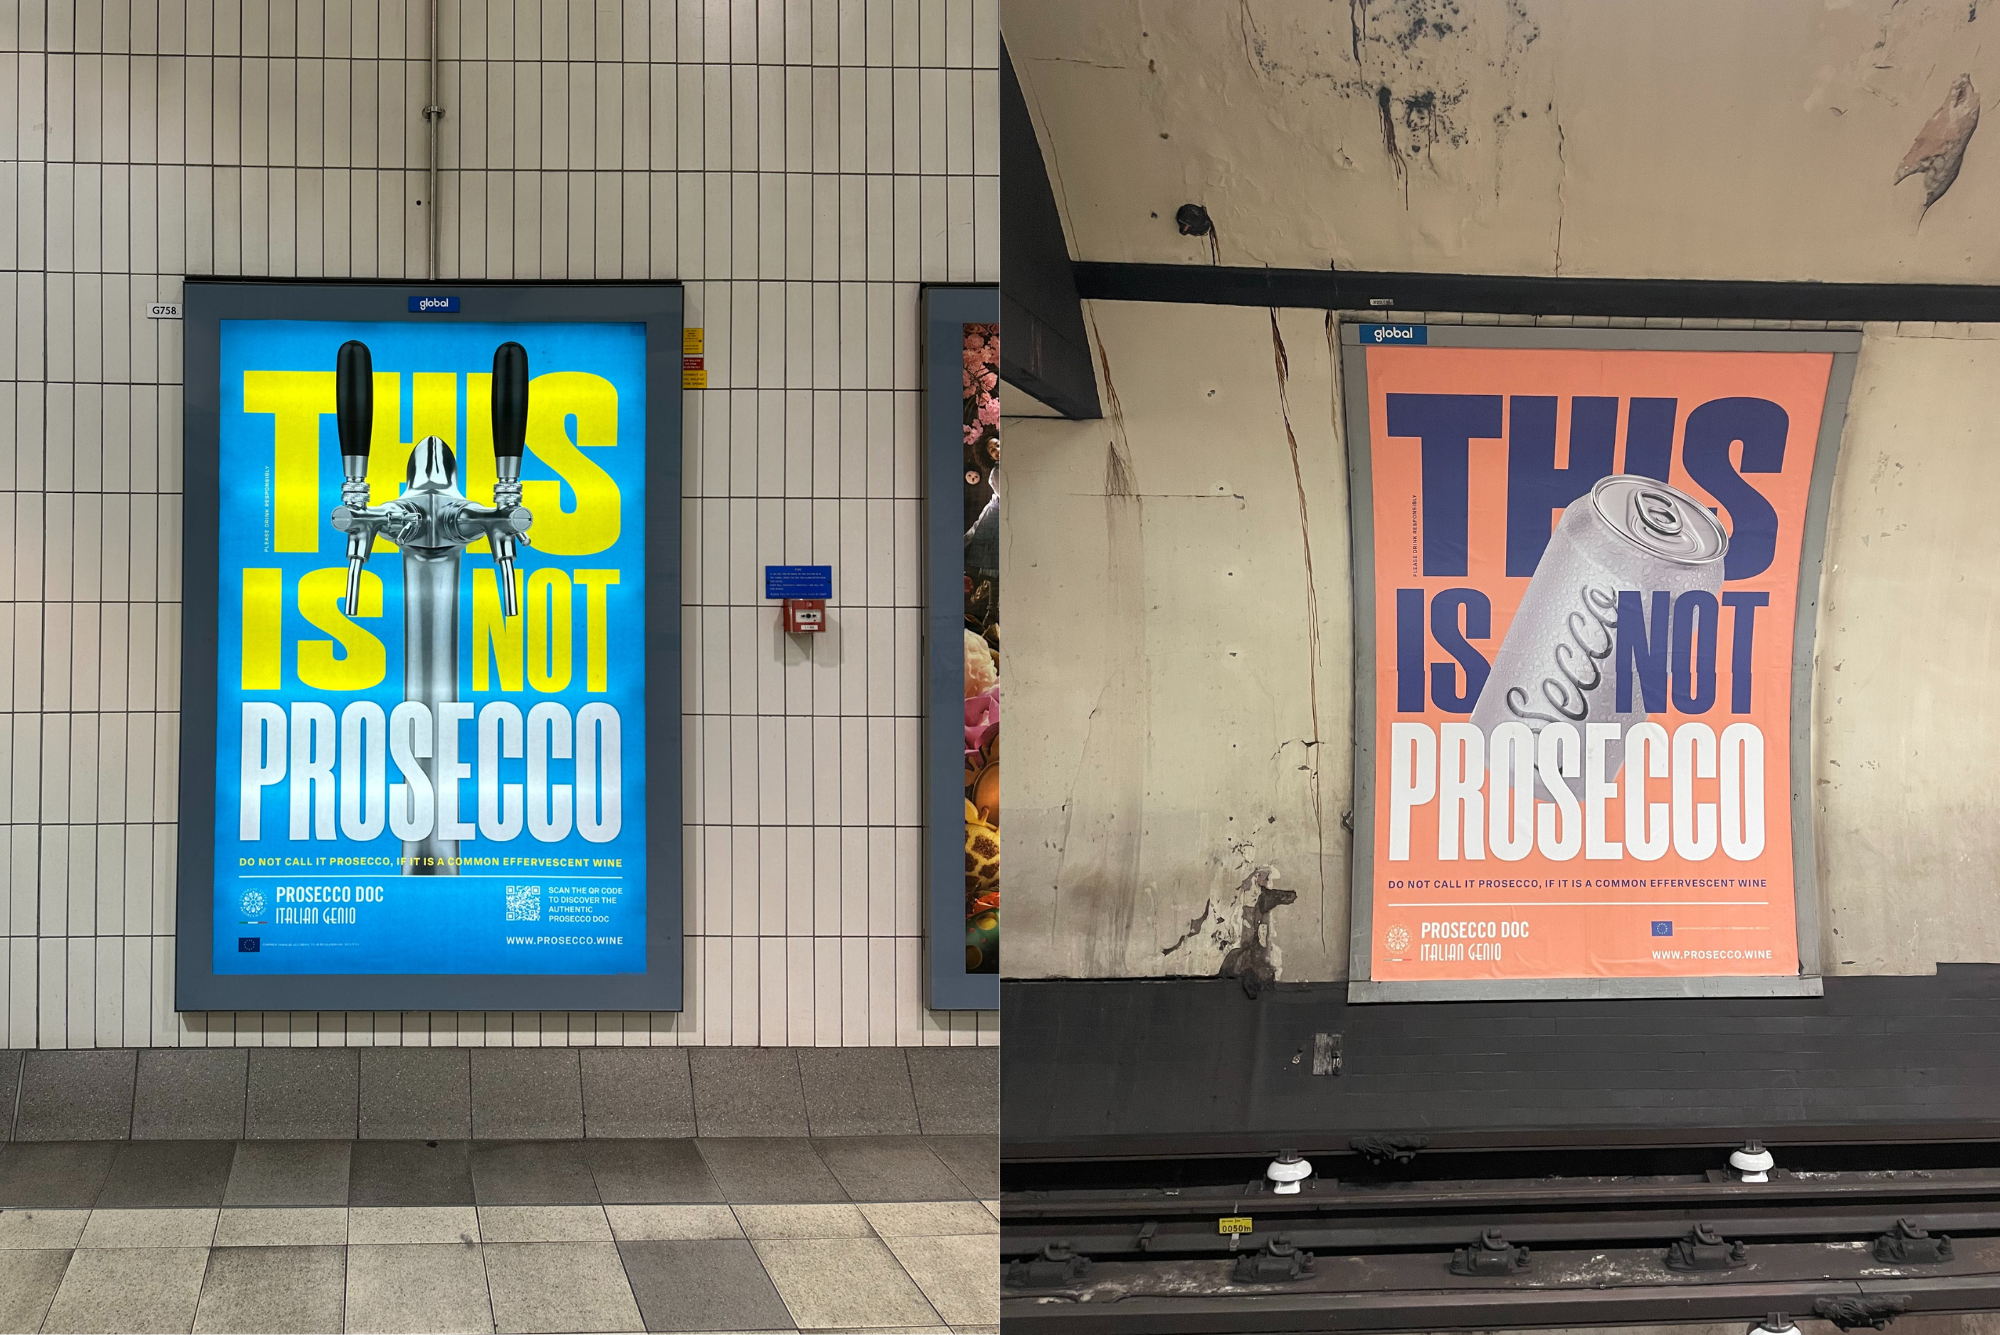 Manifesti This is not Prosecco nella metropolitana di Londra -campagna Consorzio Tutela Prosecco 2013/24